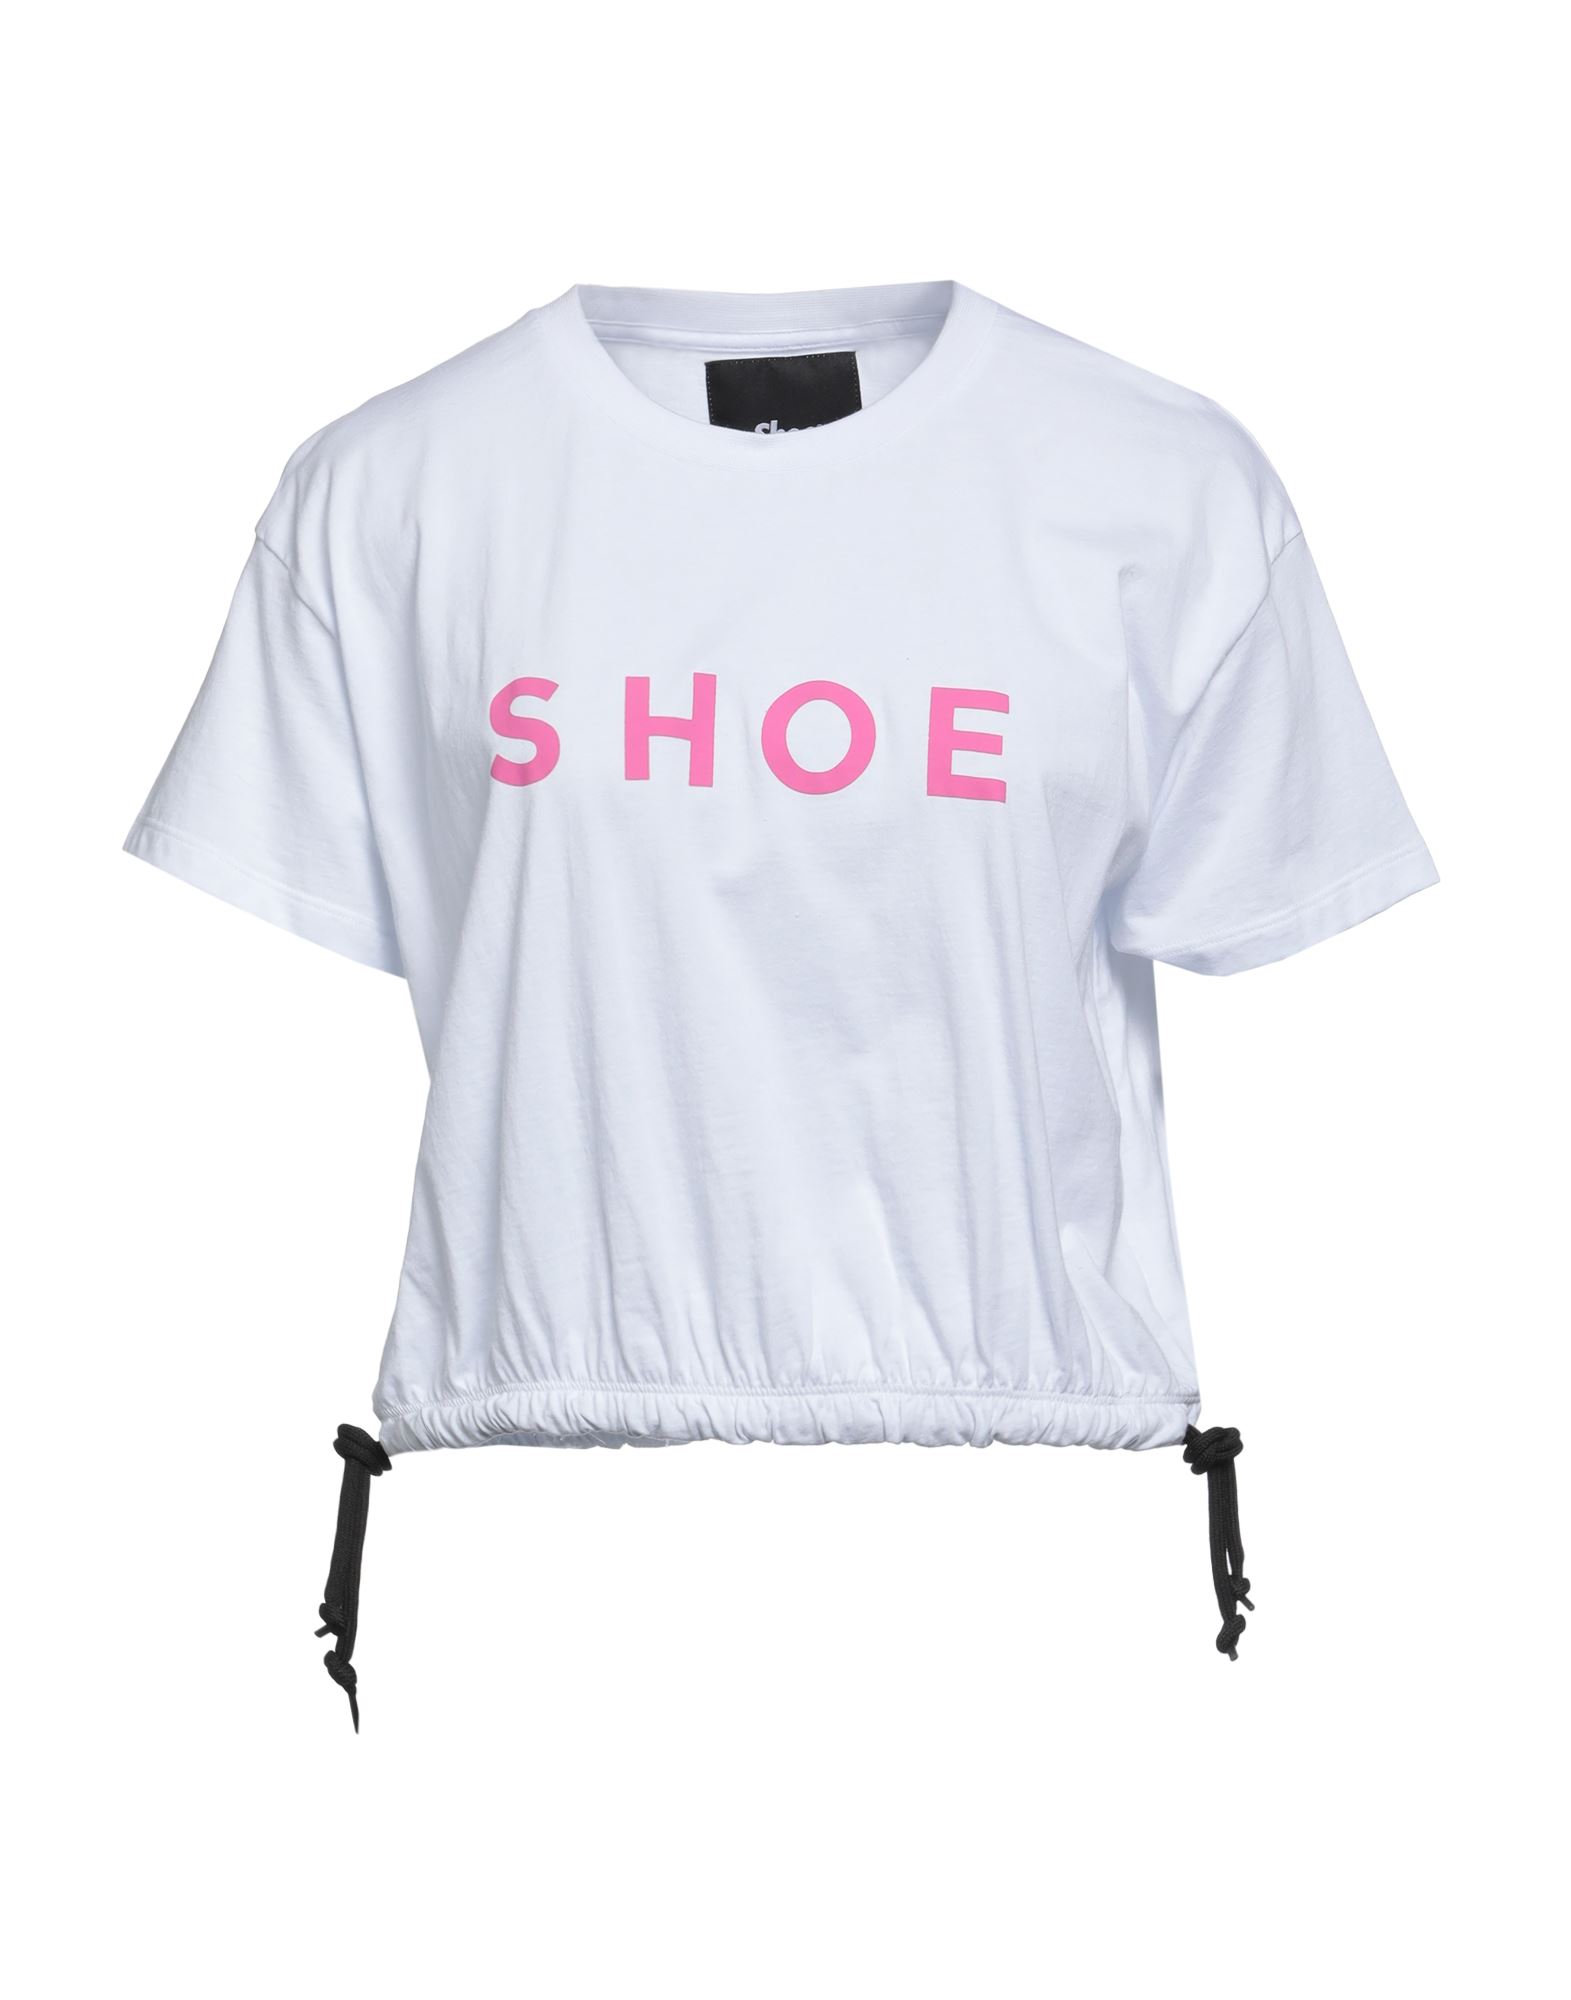 Shoe® Shoe Woman T-shirt White Size L Cotton